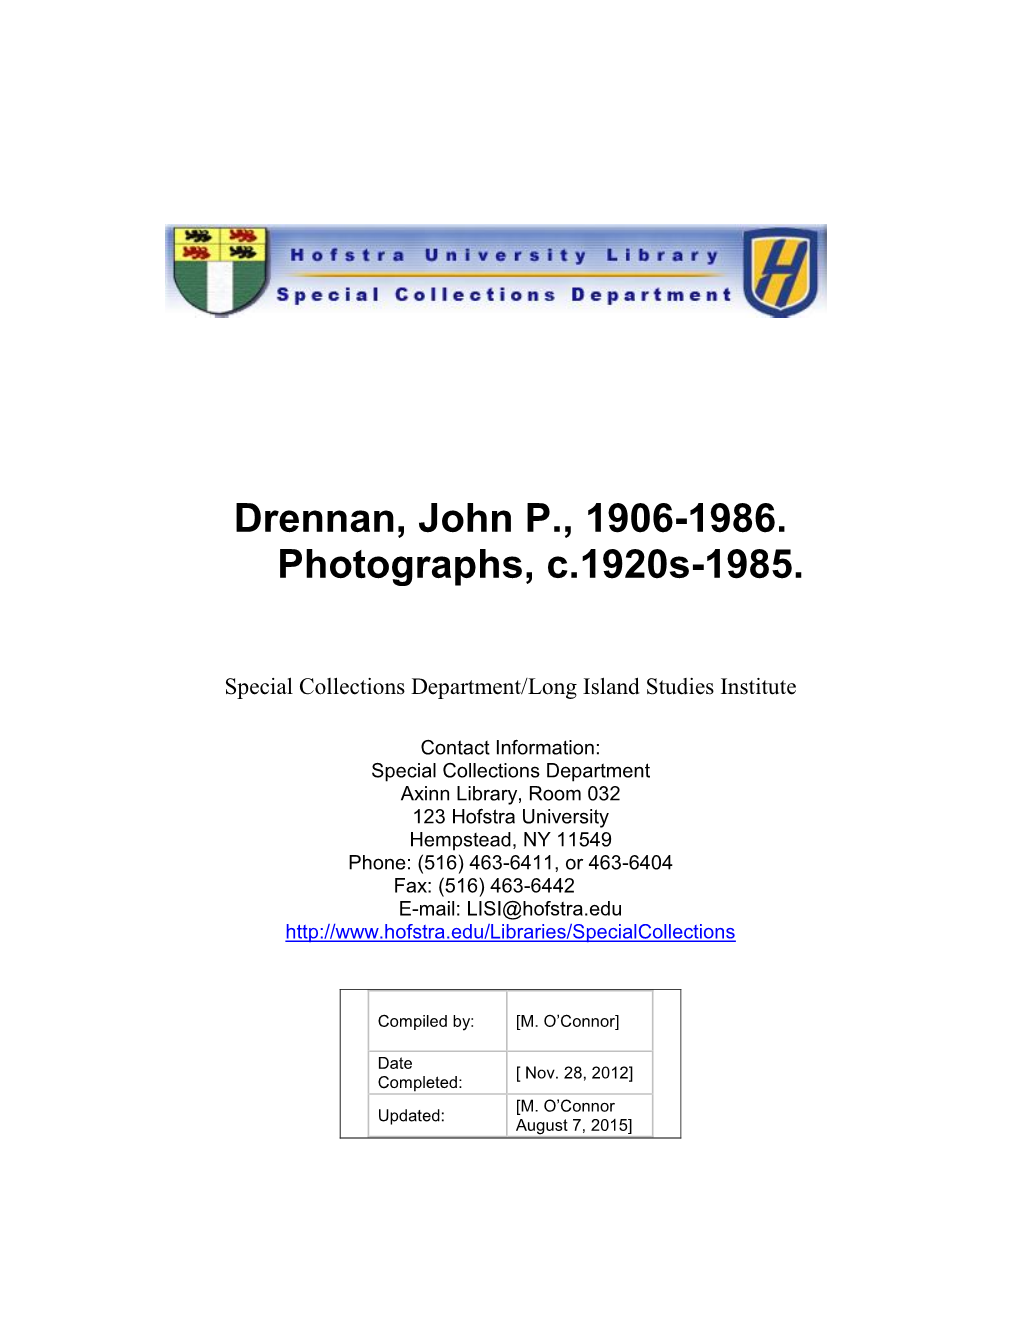 Drennan, John P., 1906-1986. Photographs, C.1920S-1985